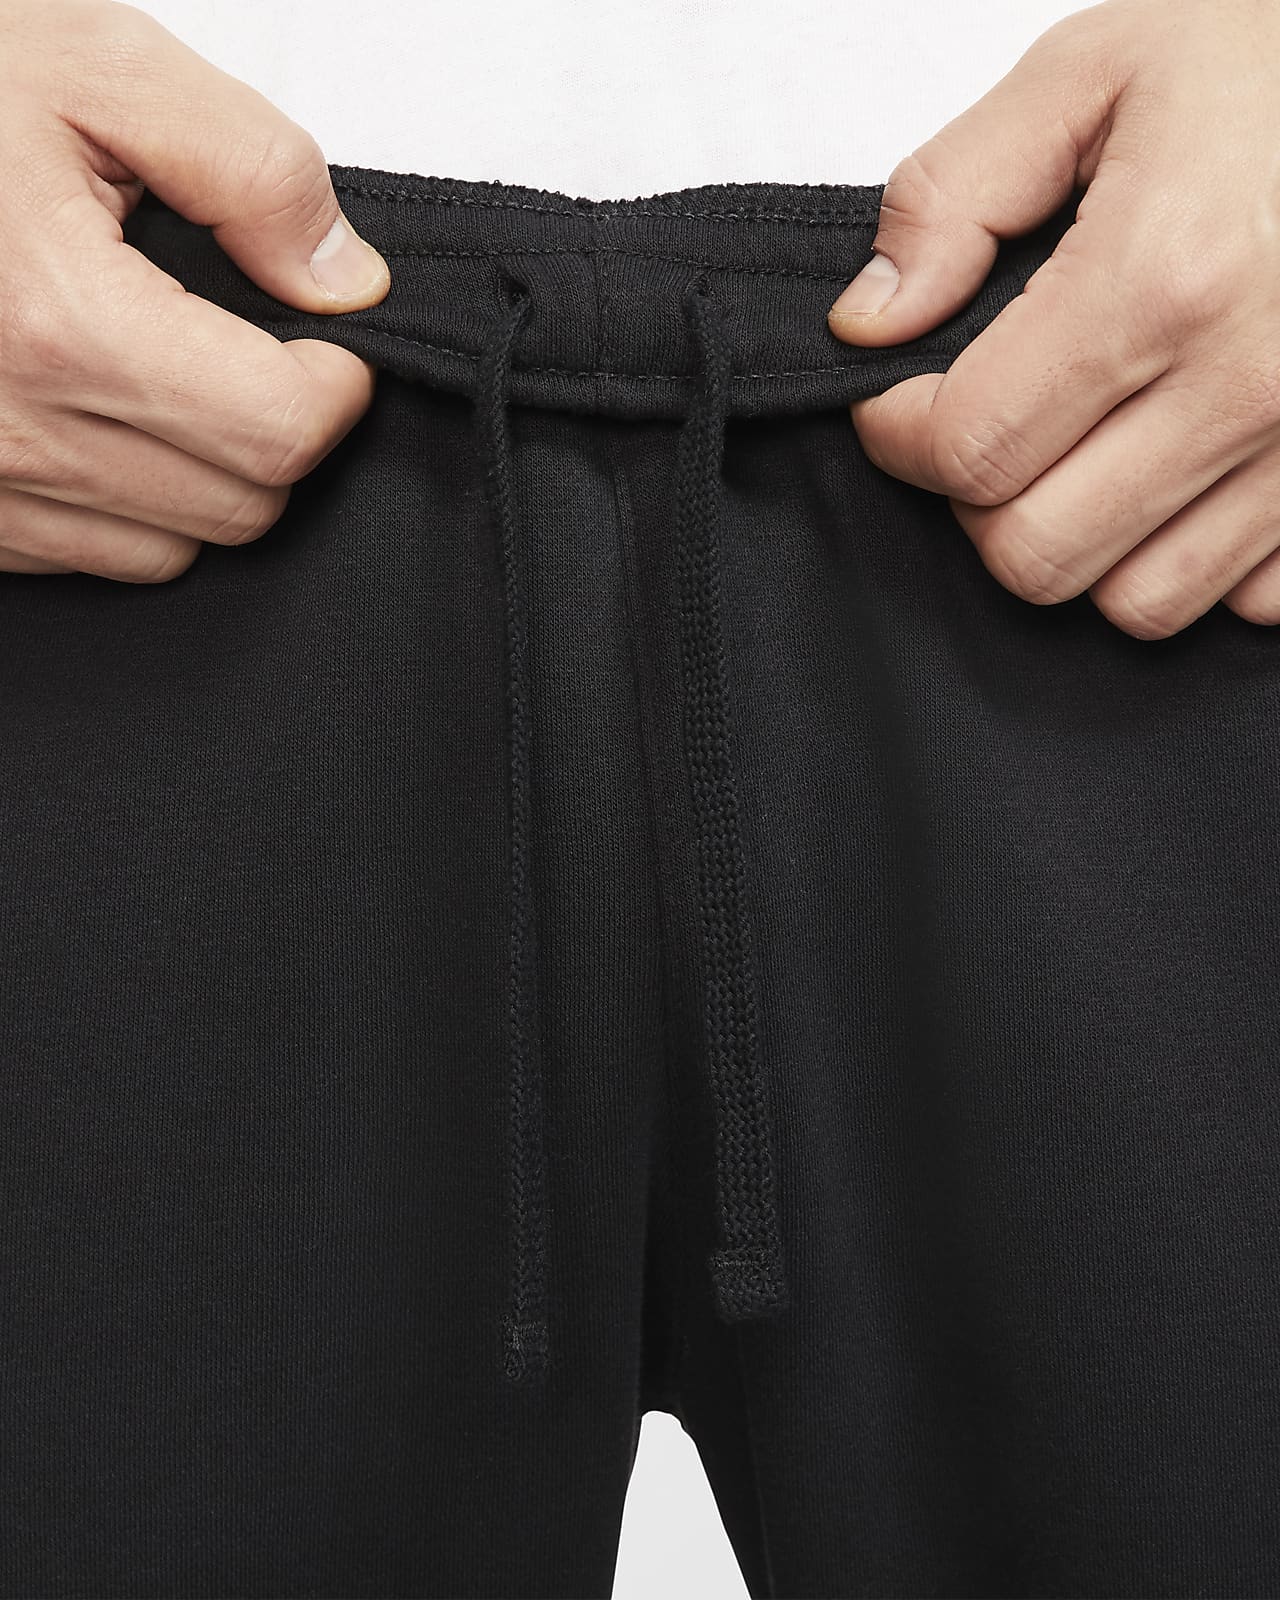 Nike Sportswear JDI Men's Fleece Trousers. Nike PH